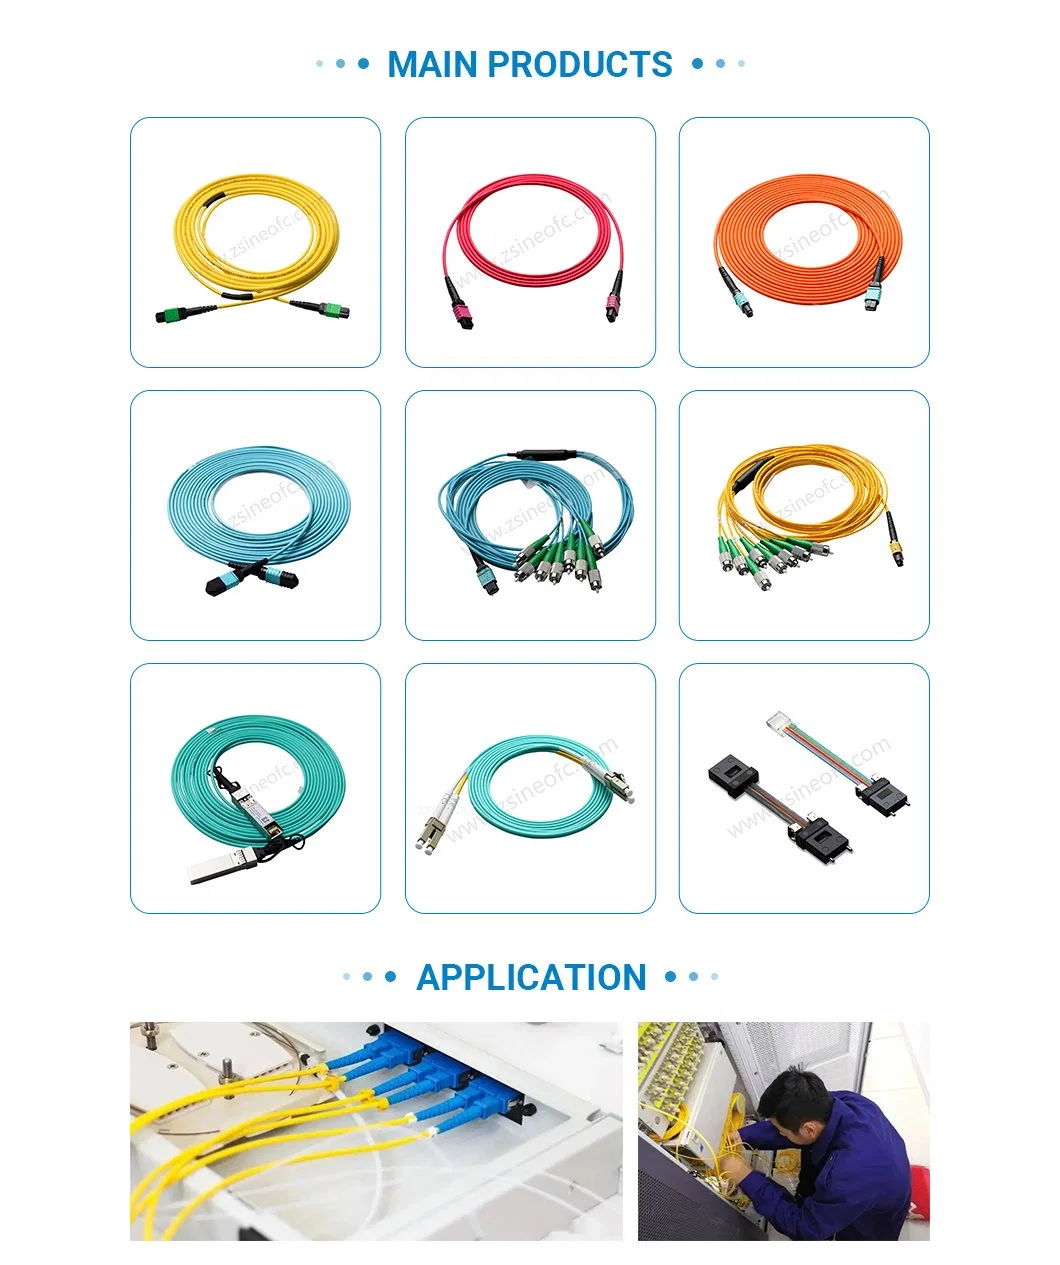 MPO-Dlc Cable Fanout Optical Fiber Cable Glass Fibre